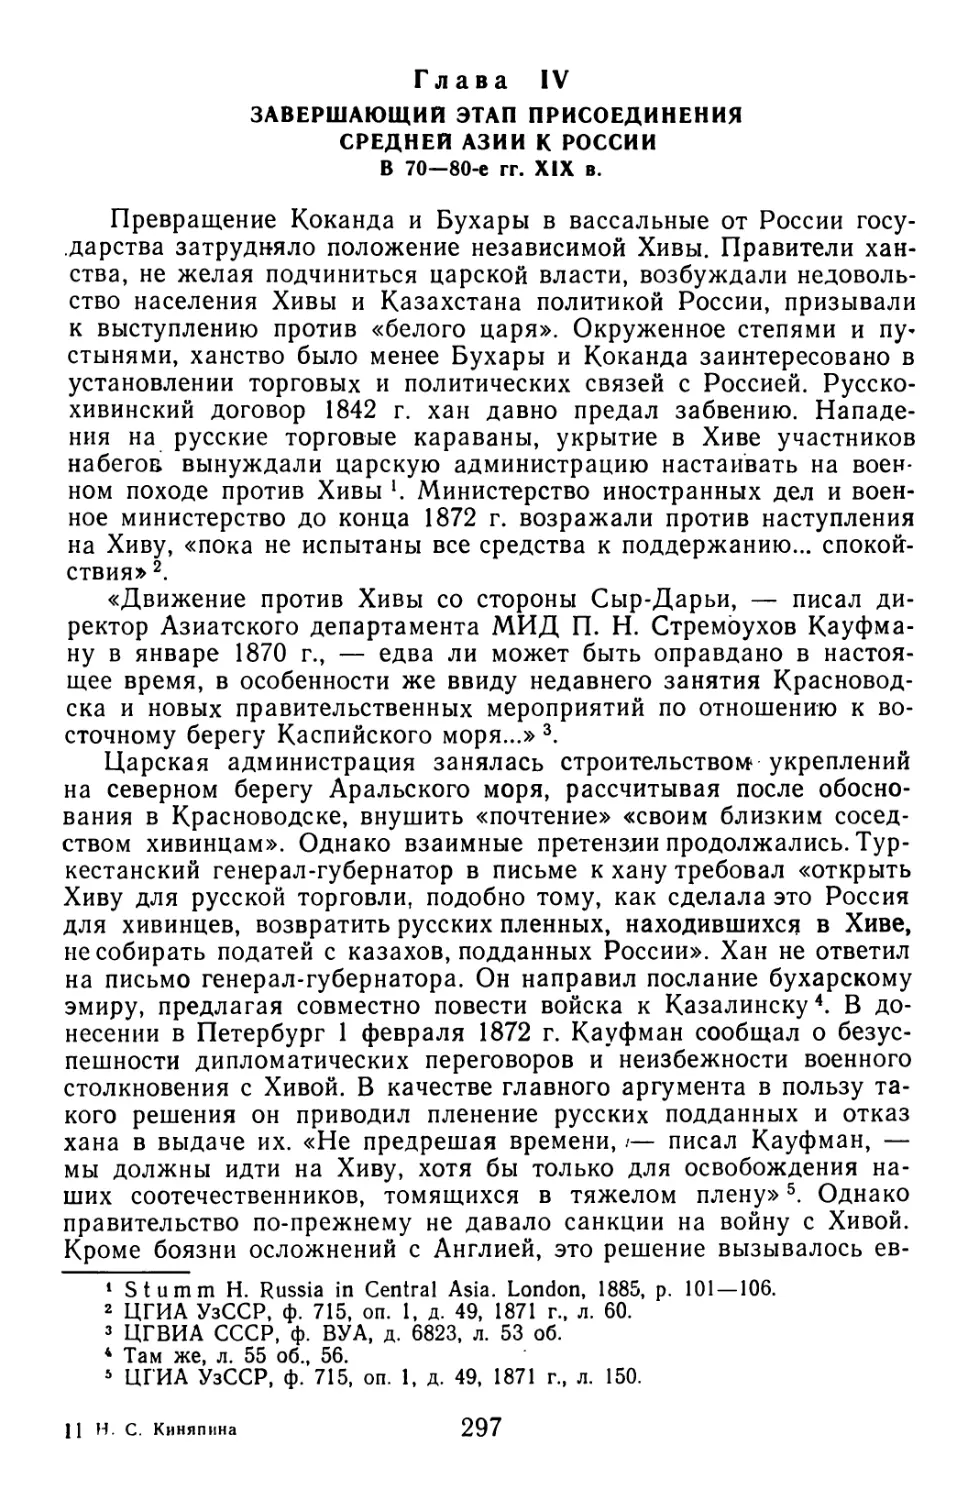 Глава IV. Завершающий этап присоединения Средней Азии к России в 70—80-е гг. XIX в.